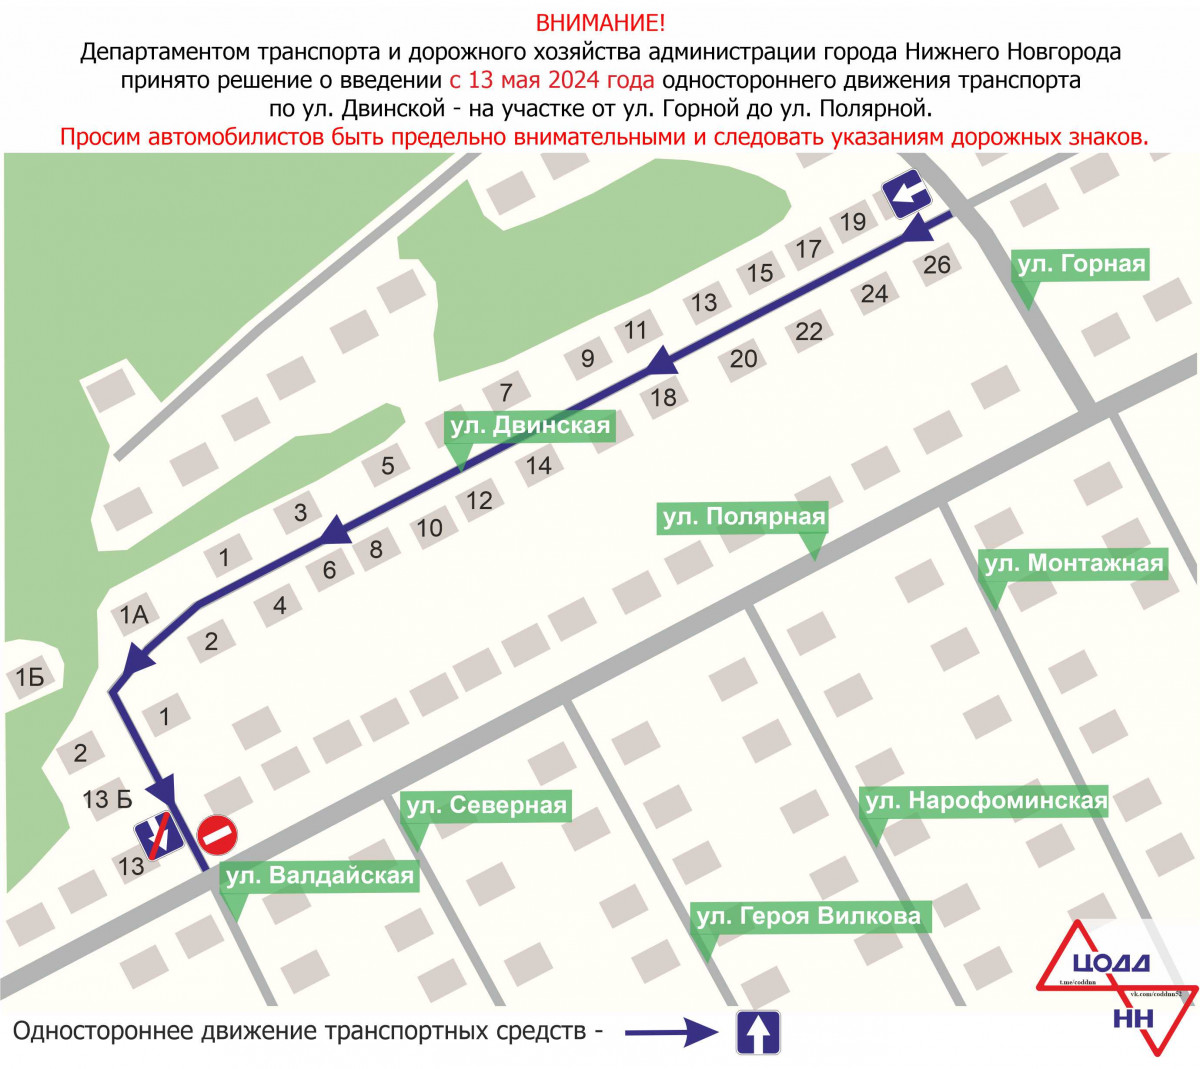 Одностороннее движение транспорта введут на участках улиц Двинской и Валдайской с 13 мая